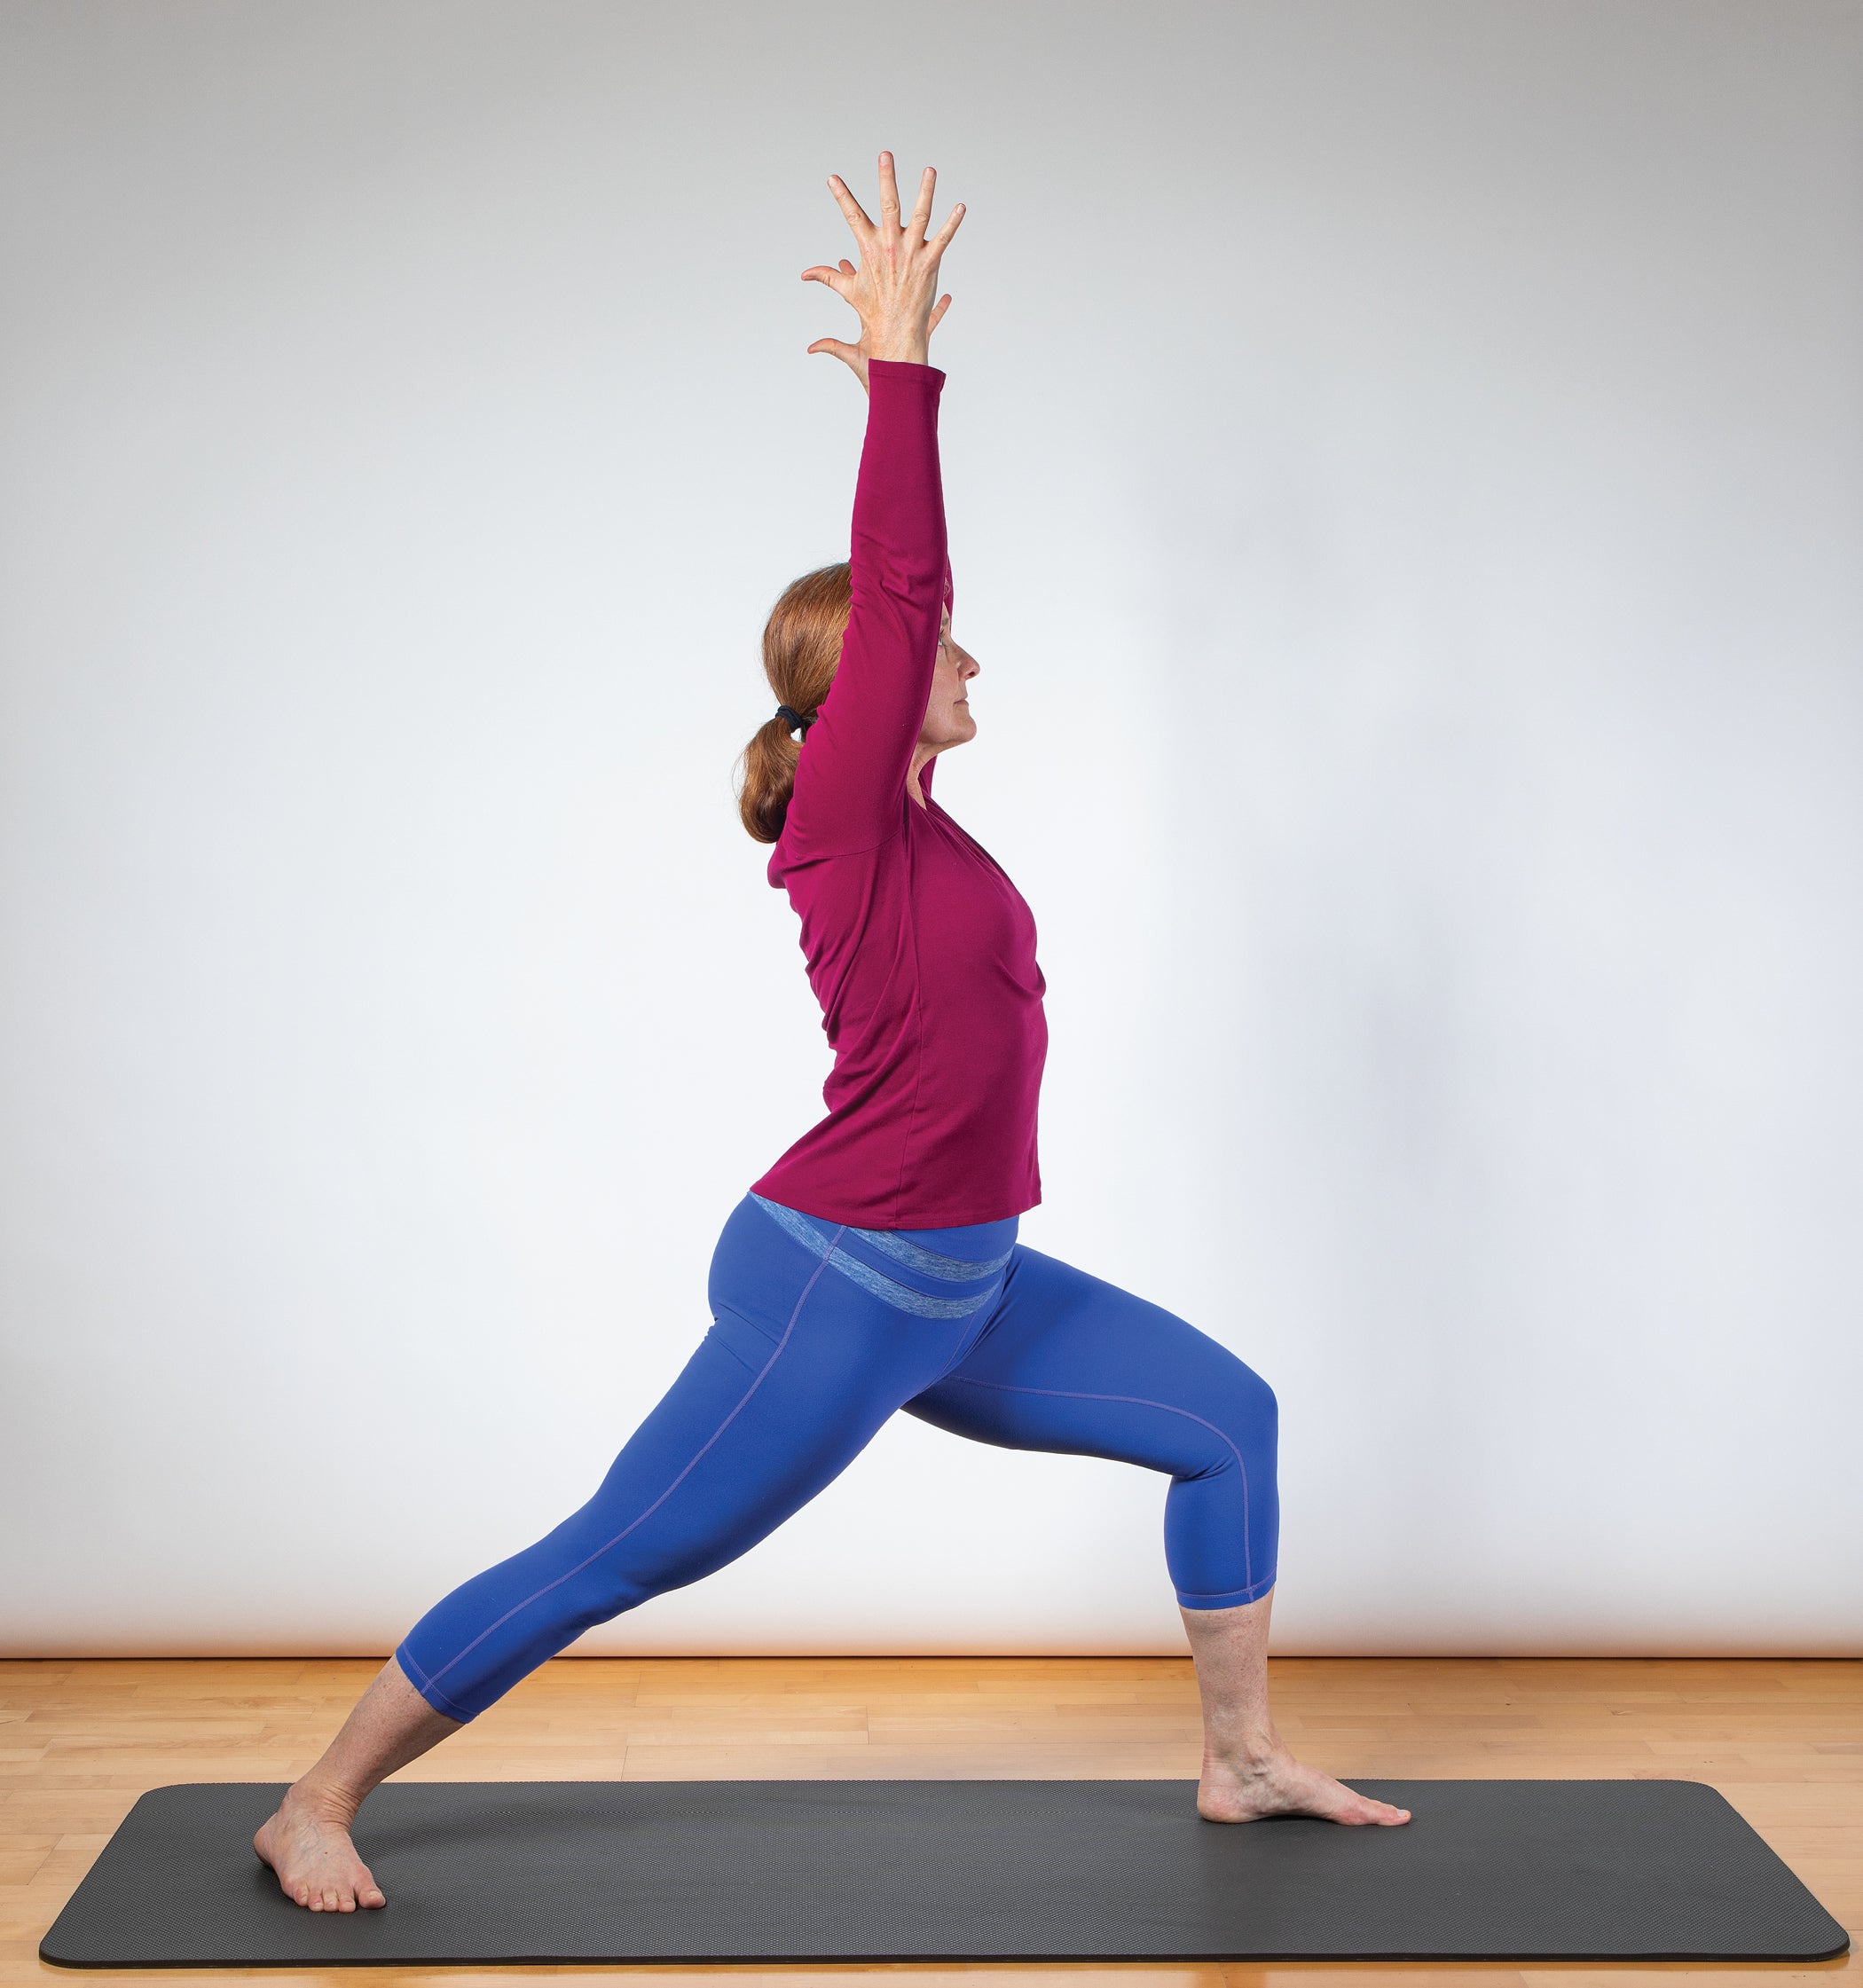 Yoga For Arthritis | अर्थराइटिस से छुटकारा पाने के लिए करें ये 5 योगासन,  जोड़ों के दर्द से मिलेगी राहत | TheHealthSite.com हिंदी